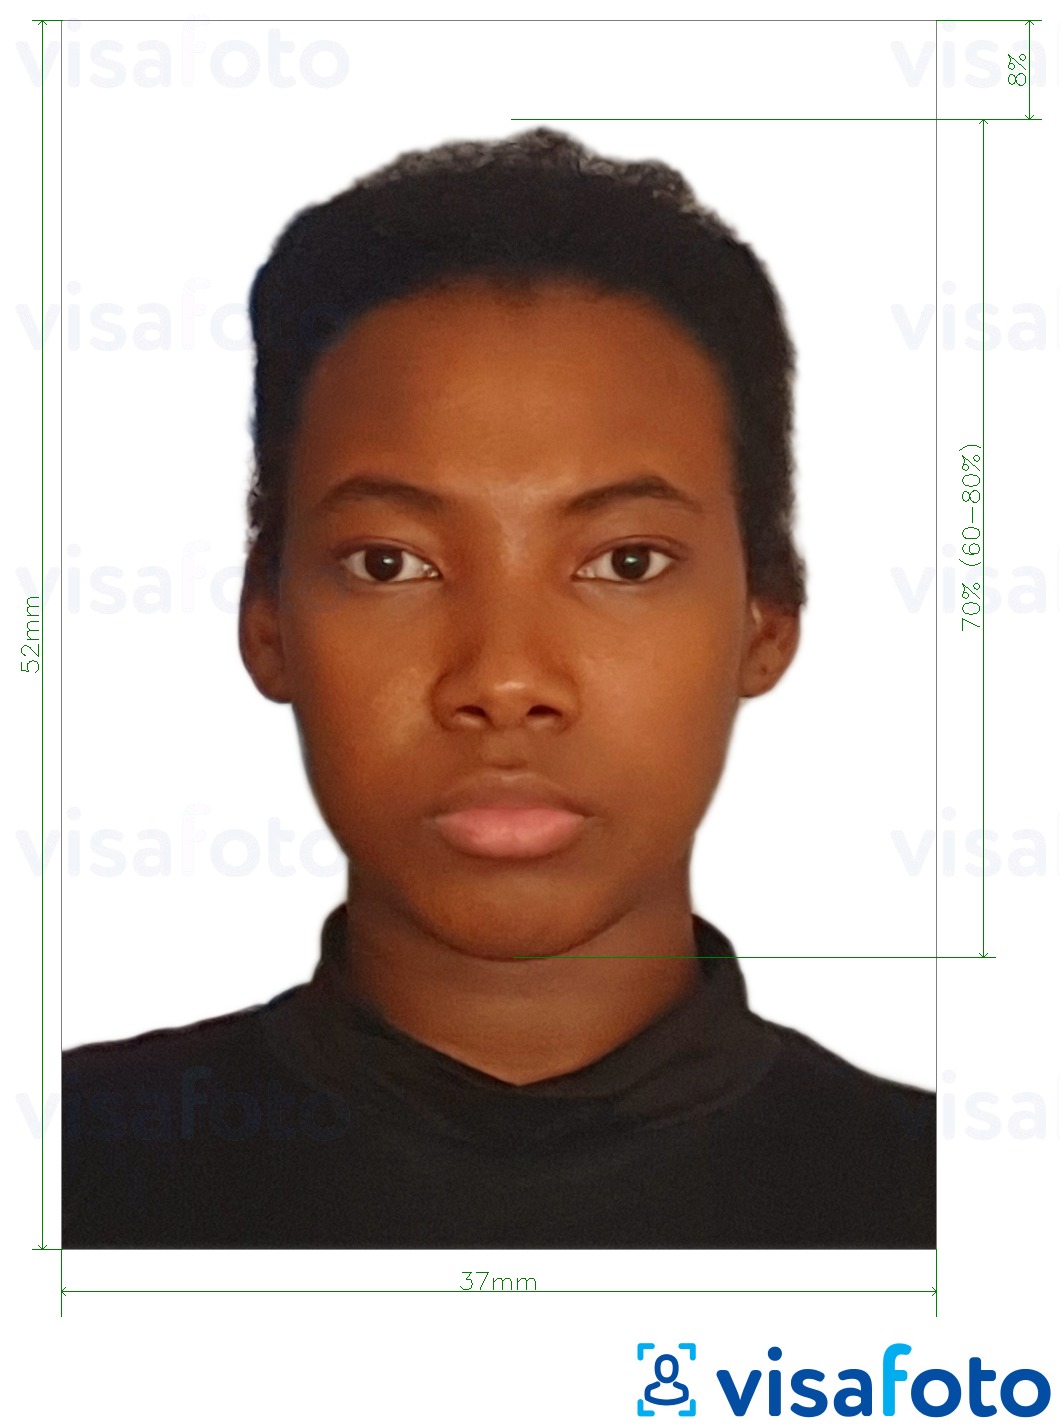 Primjer fotografije za Namibijska putovnica 37x52mm (3.7x5.2 cm) s točno određenom veličinom